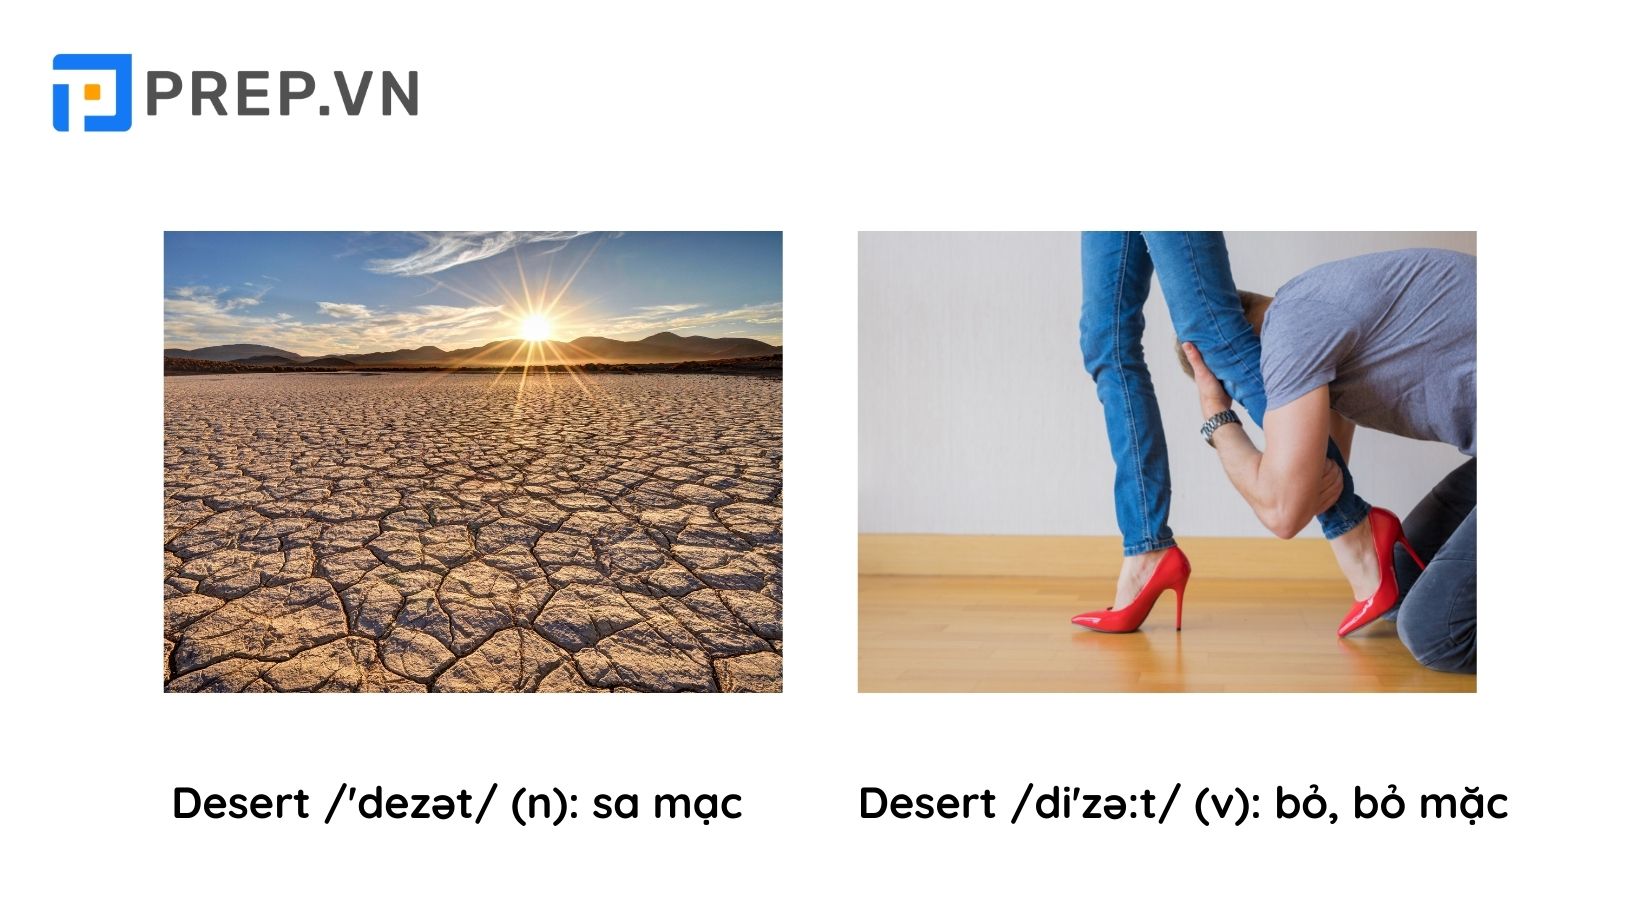 Ví dụ cơ bản về cách phát âm từ desert